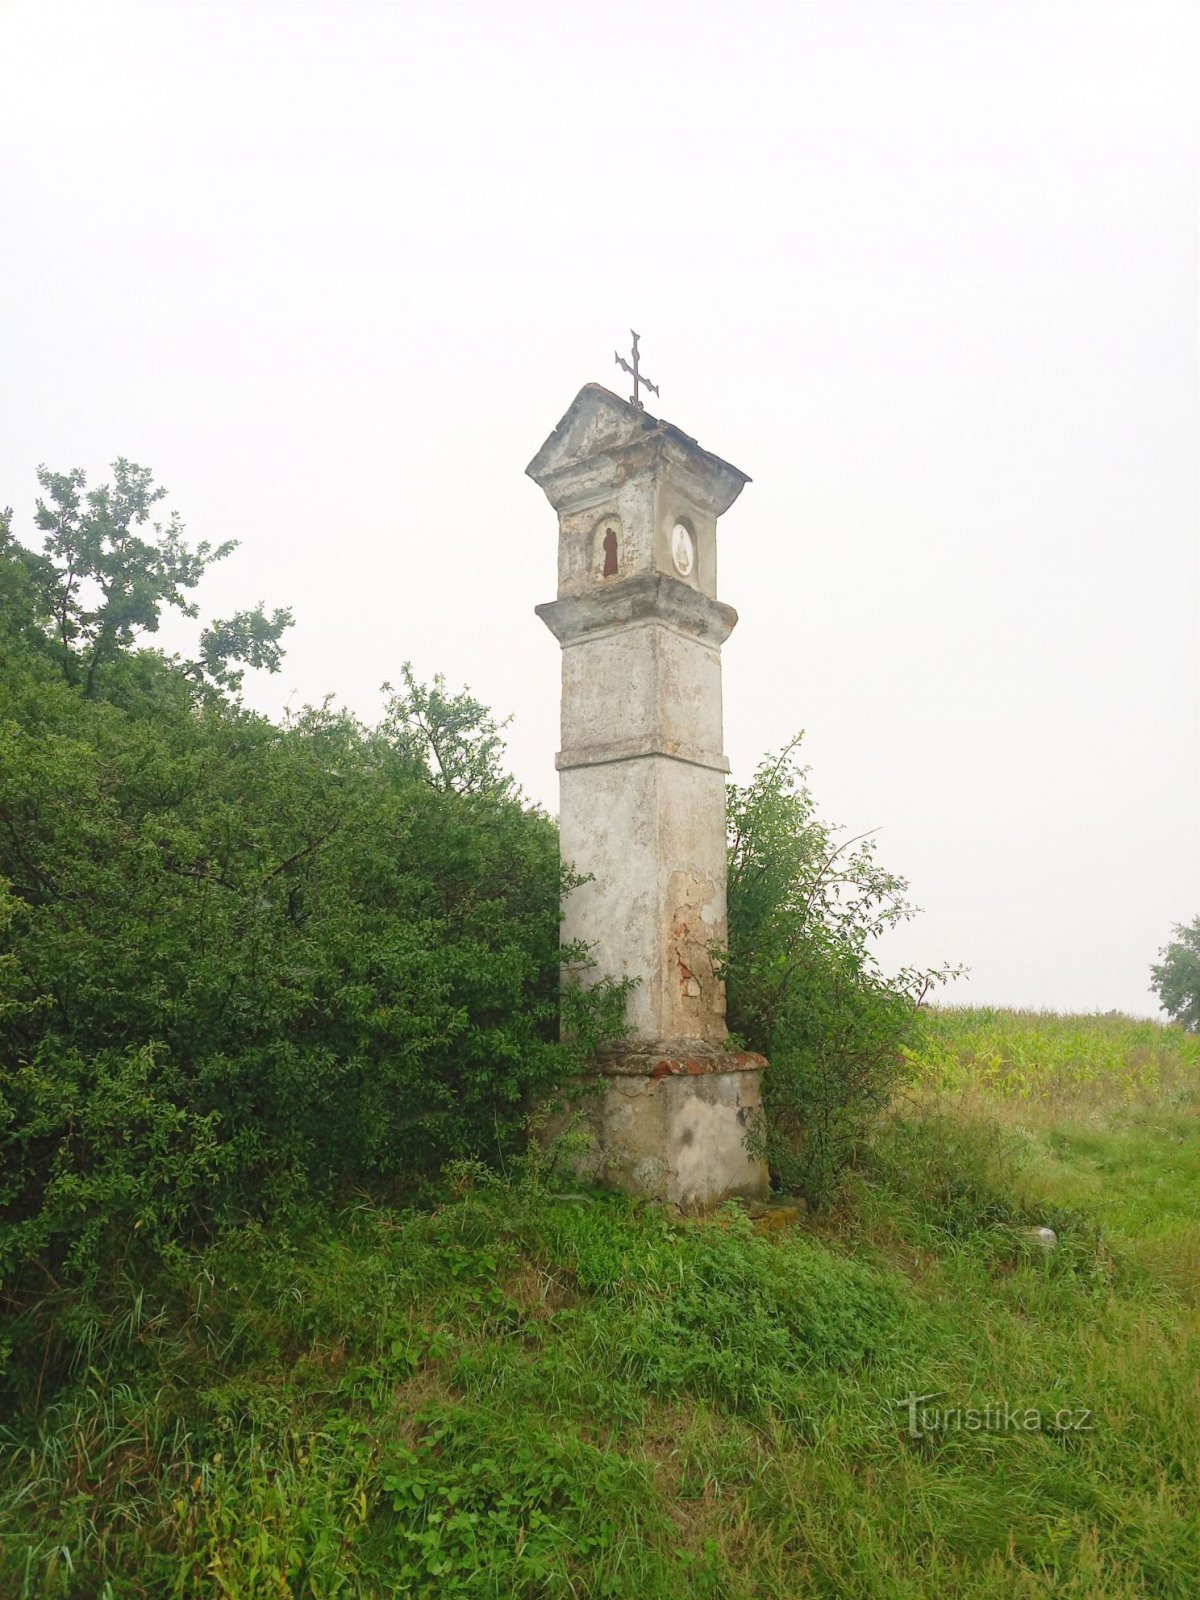 2. La agonía de las columnas de ladrillo cerca de Kňovice de finales de los siglos XVIII y XIX